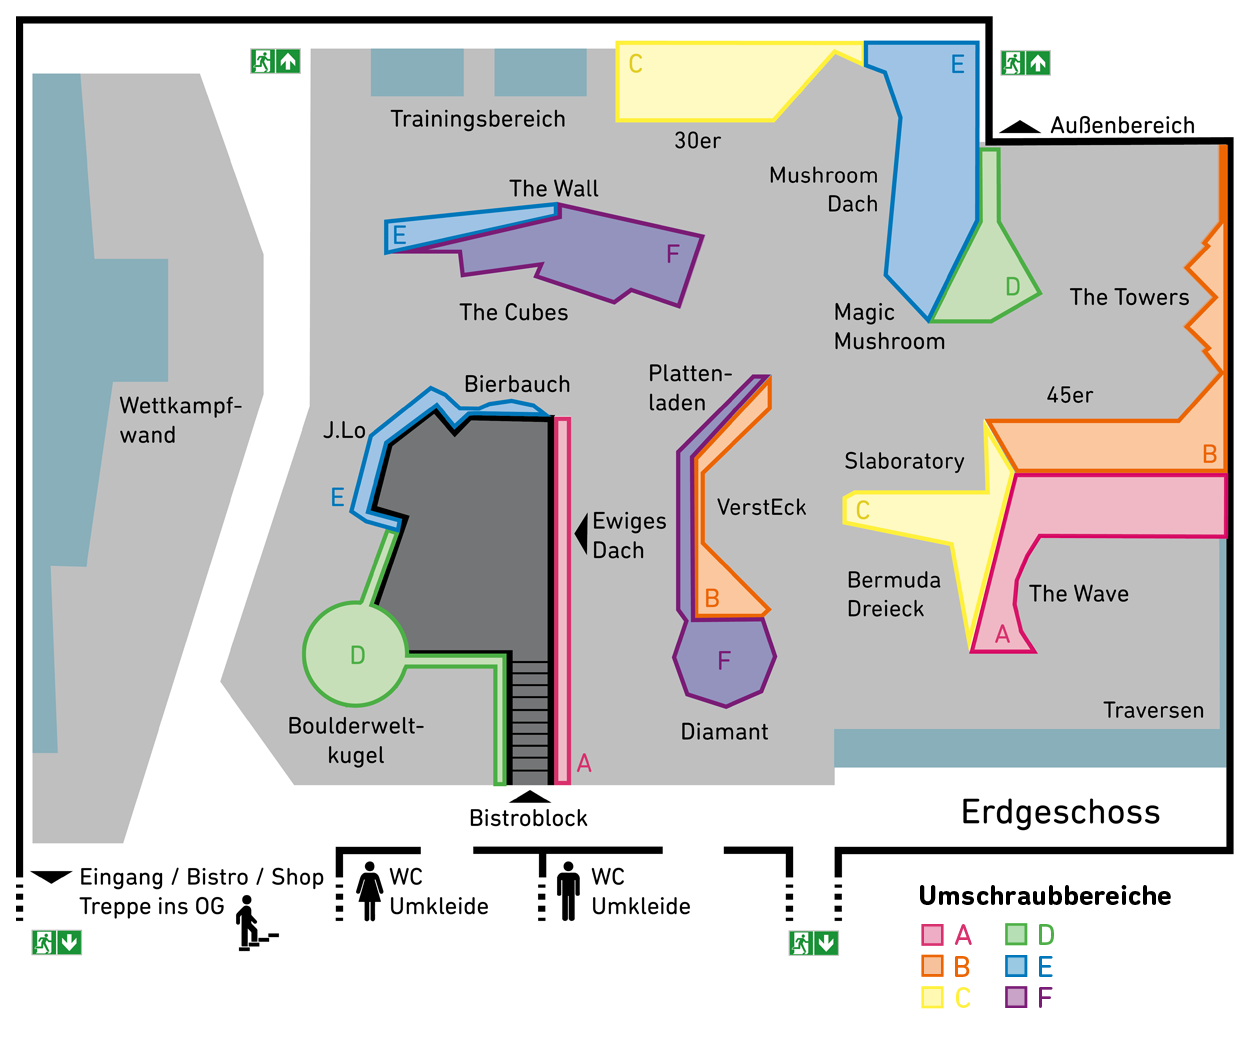 Hallenplan der Boulderwelt Regensburgen mit den Umschraubbereichen im